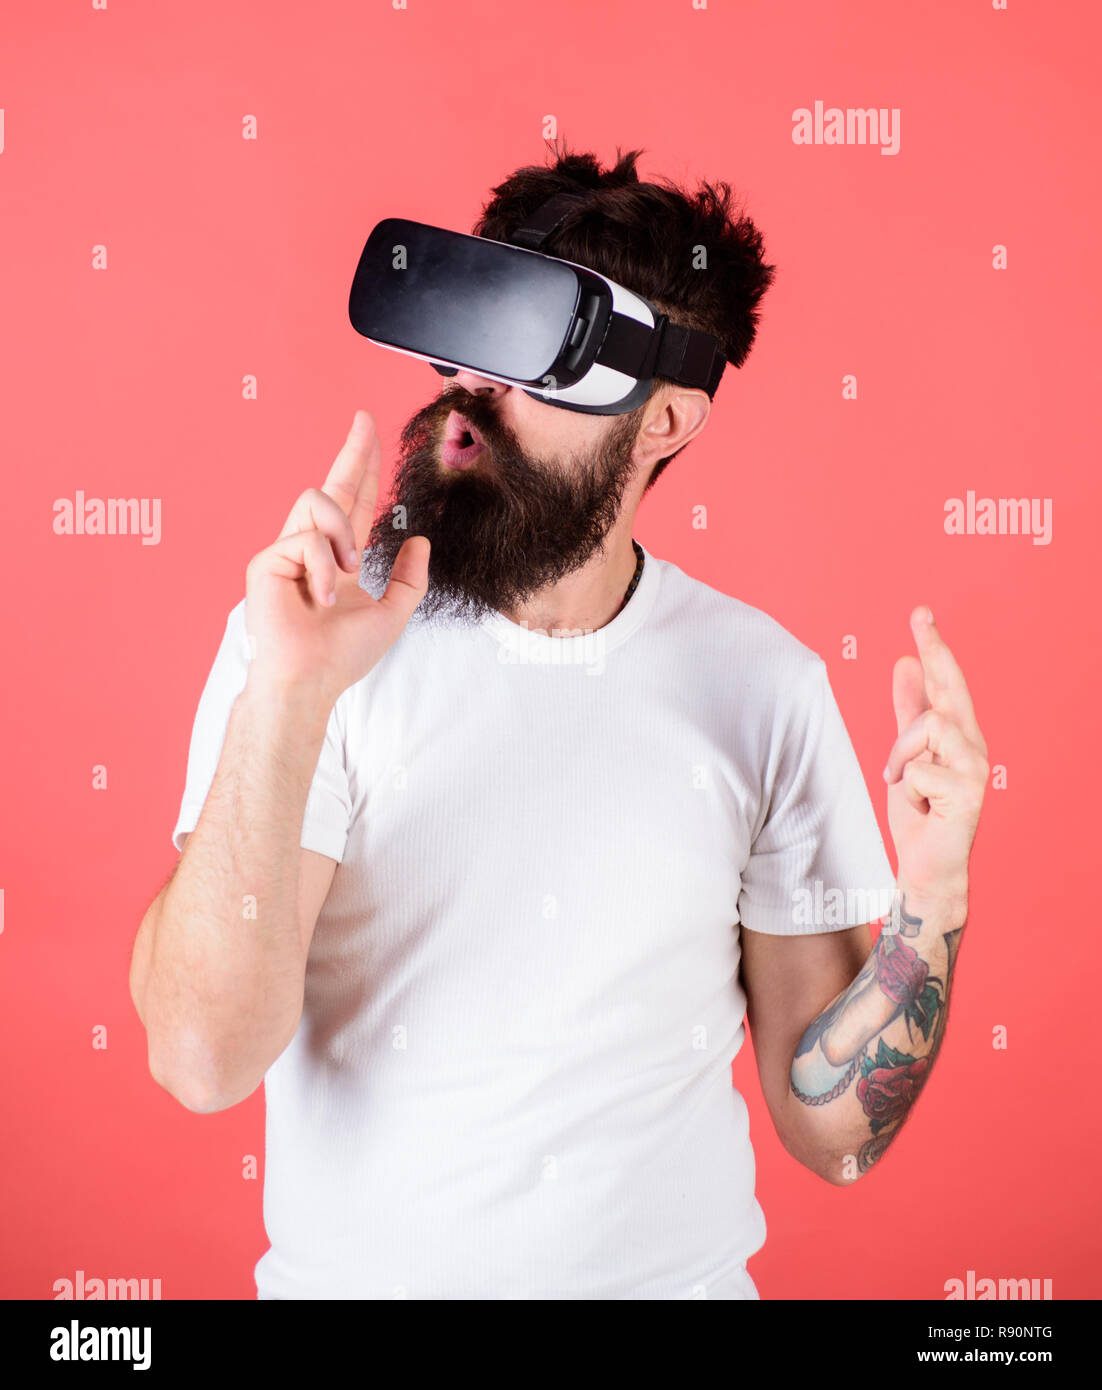 Man bärtige Hipster mit Virtual reality Headset auf roten Hintergrund.  Schießstand VR. First Person Shooter zeigt, wie süchtig VR werden könnte.  Hand Geste als Waffe spielen Shooter Spiel im VR-Brille Stockfotografie -